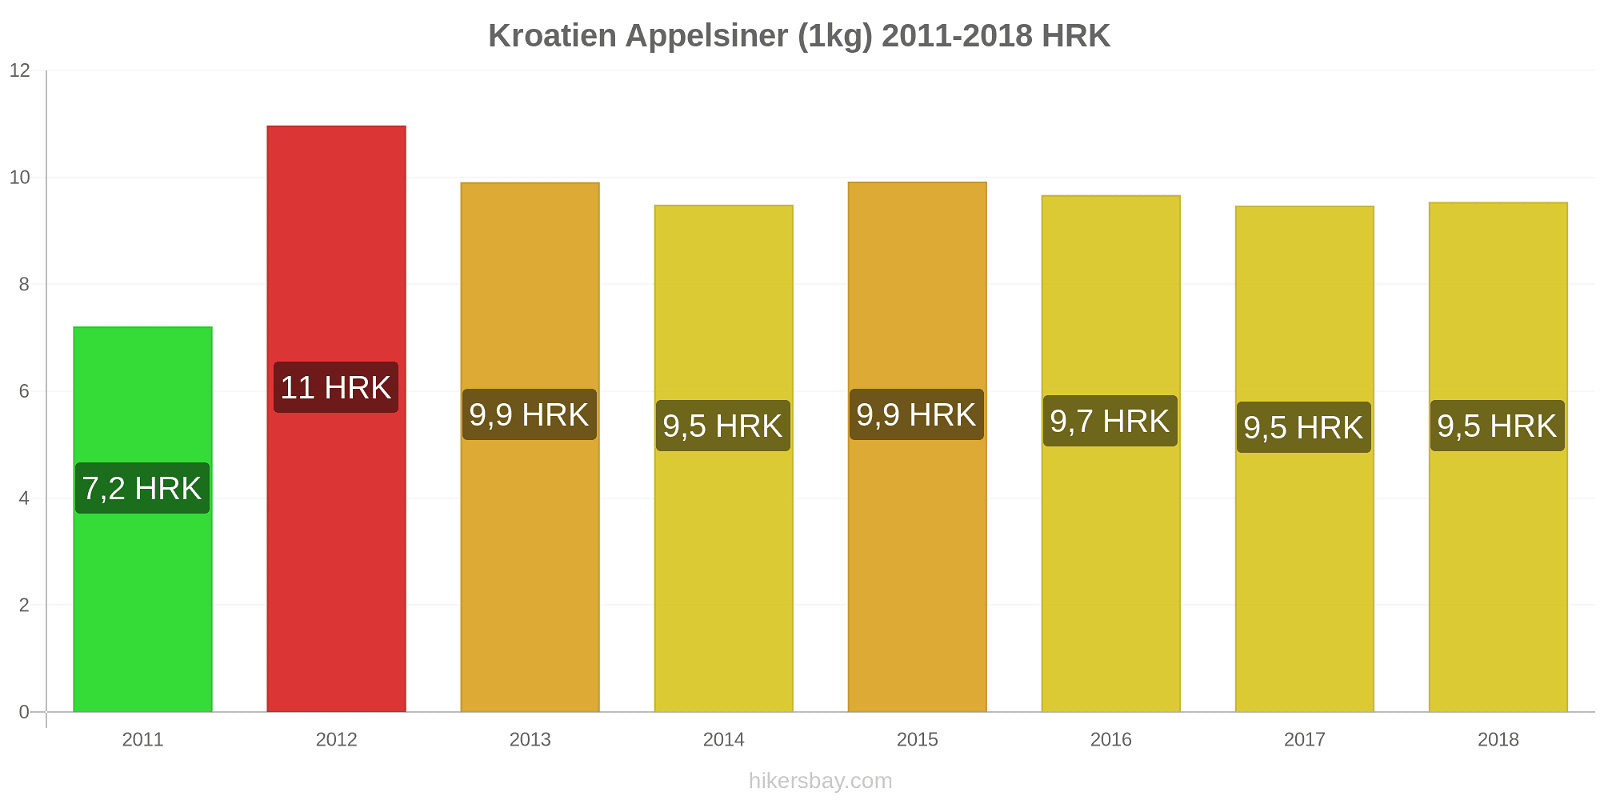 Kroatien prisændringer Appelsiner (1kg) hikersbay.com